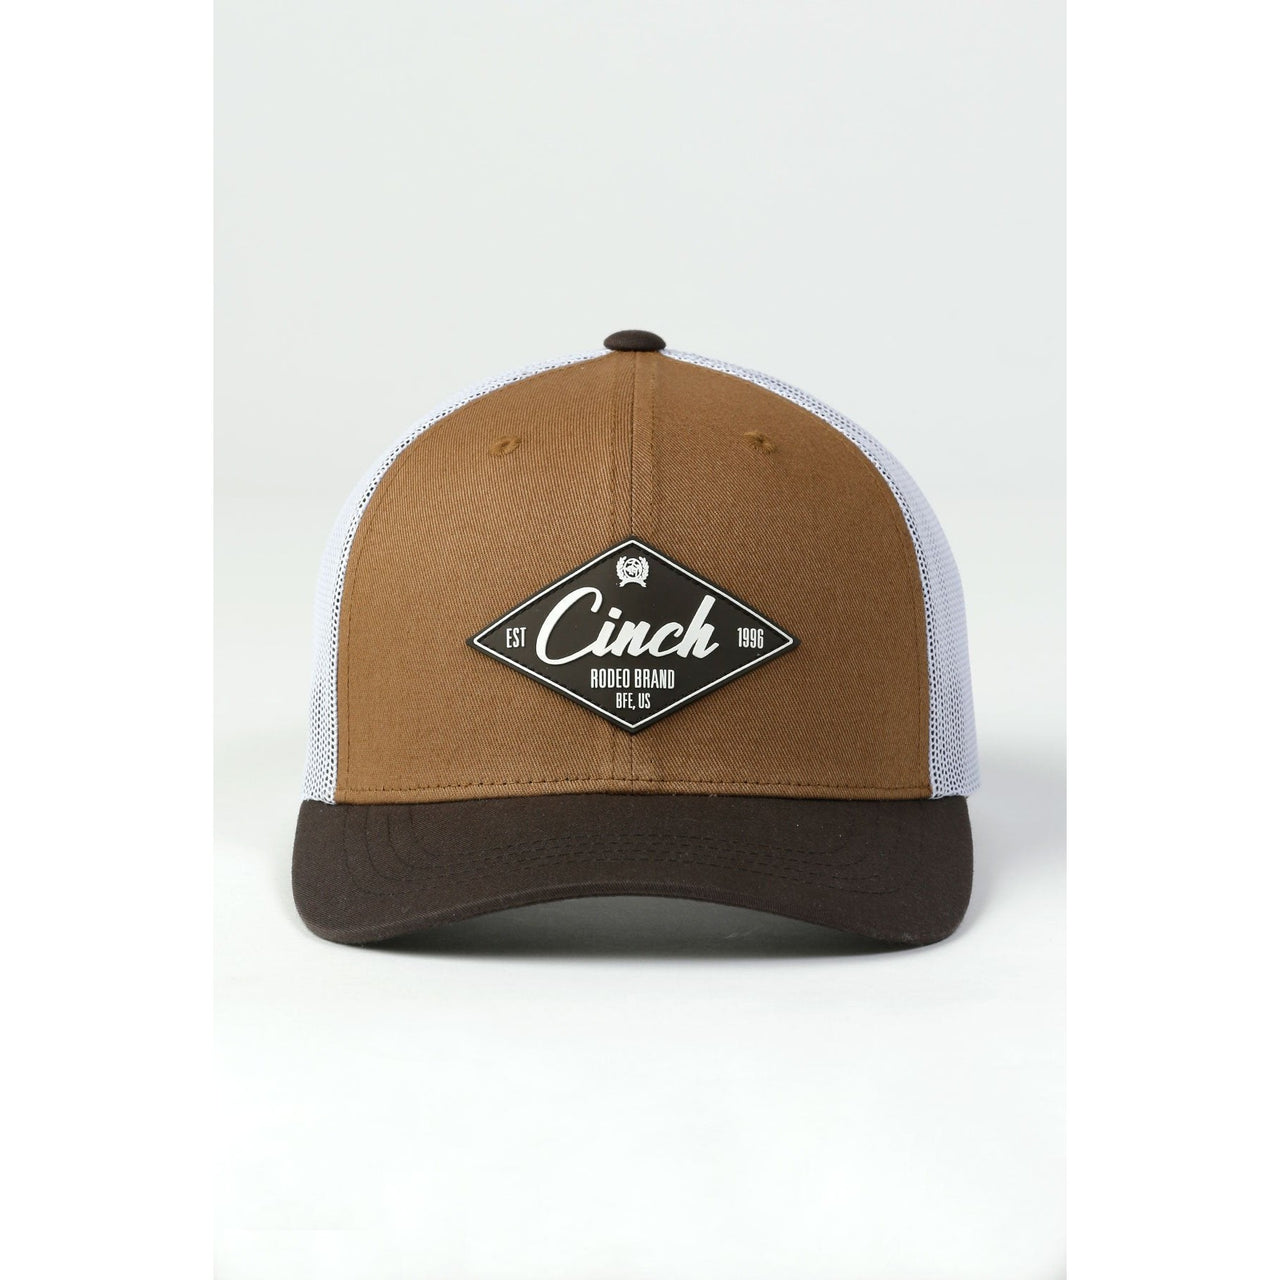 Cinch Men's Trucker Cap - Brown